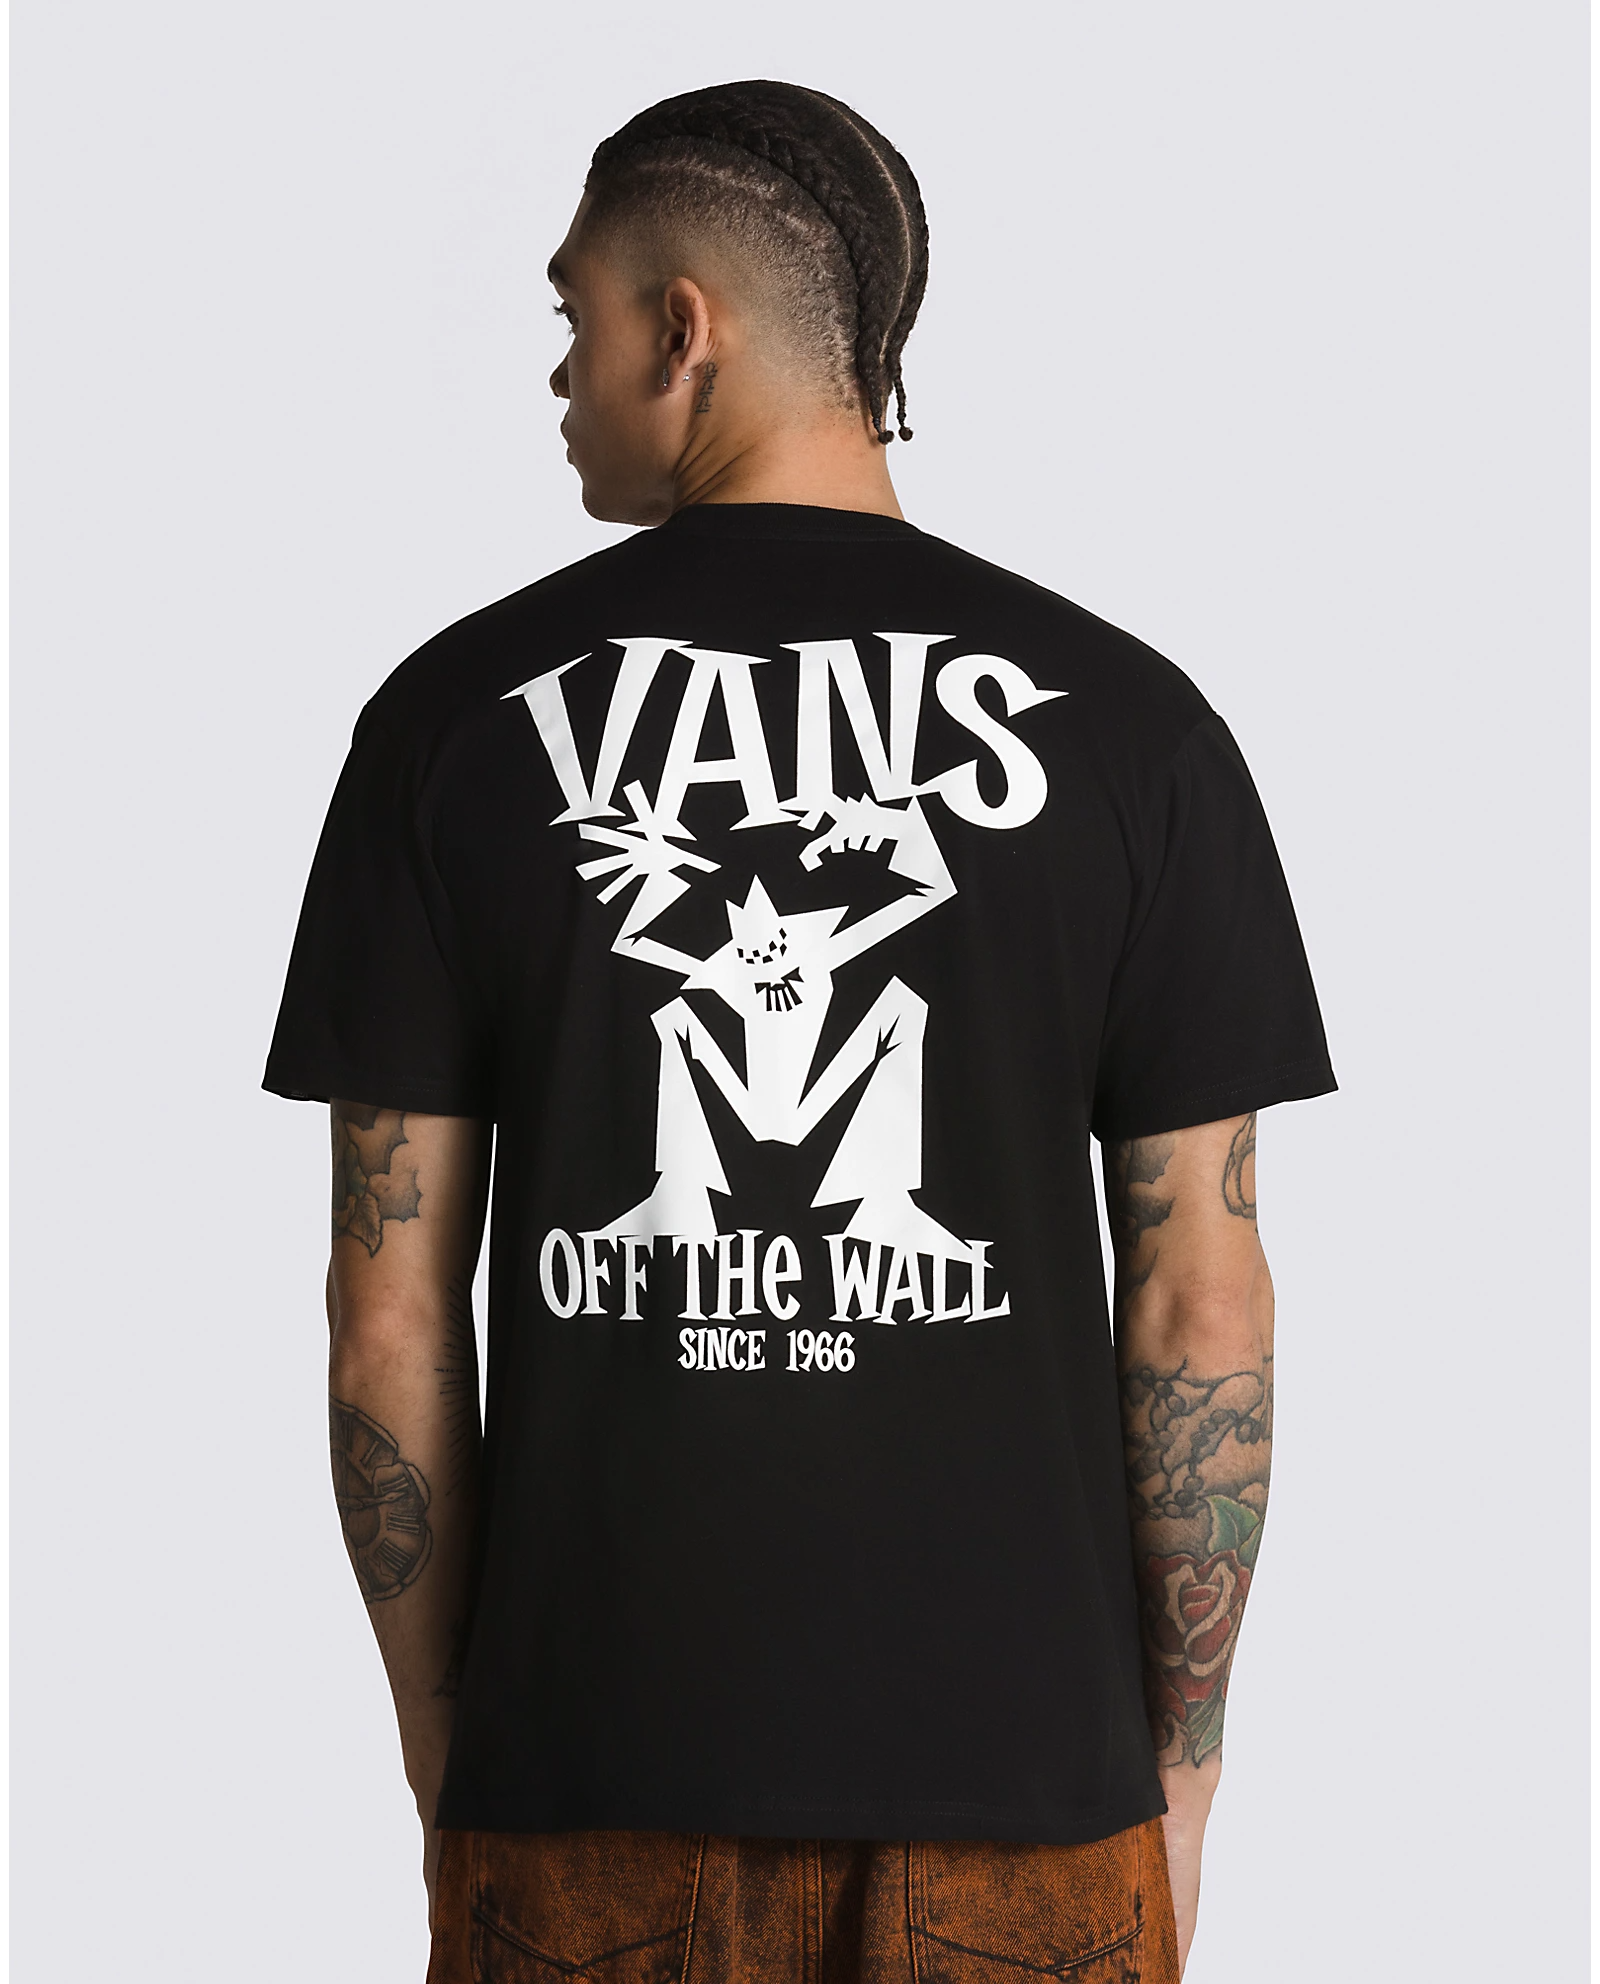 Vans Sketchy Friend T-Shirt Black VN0006DKBLK